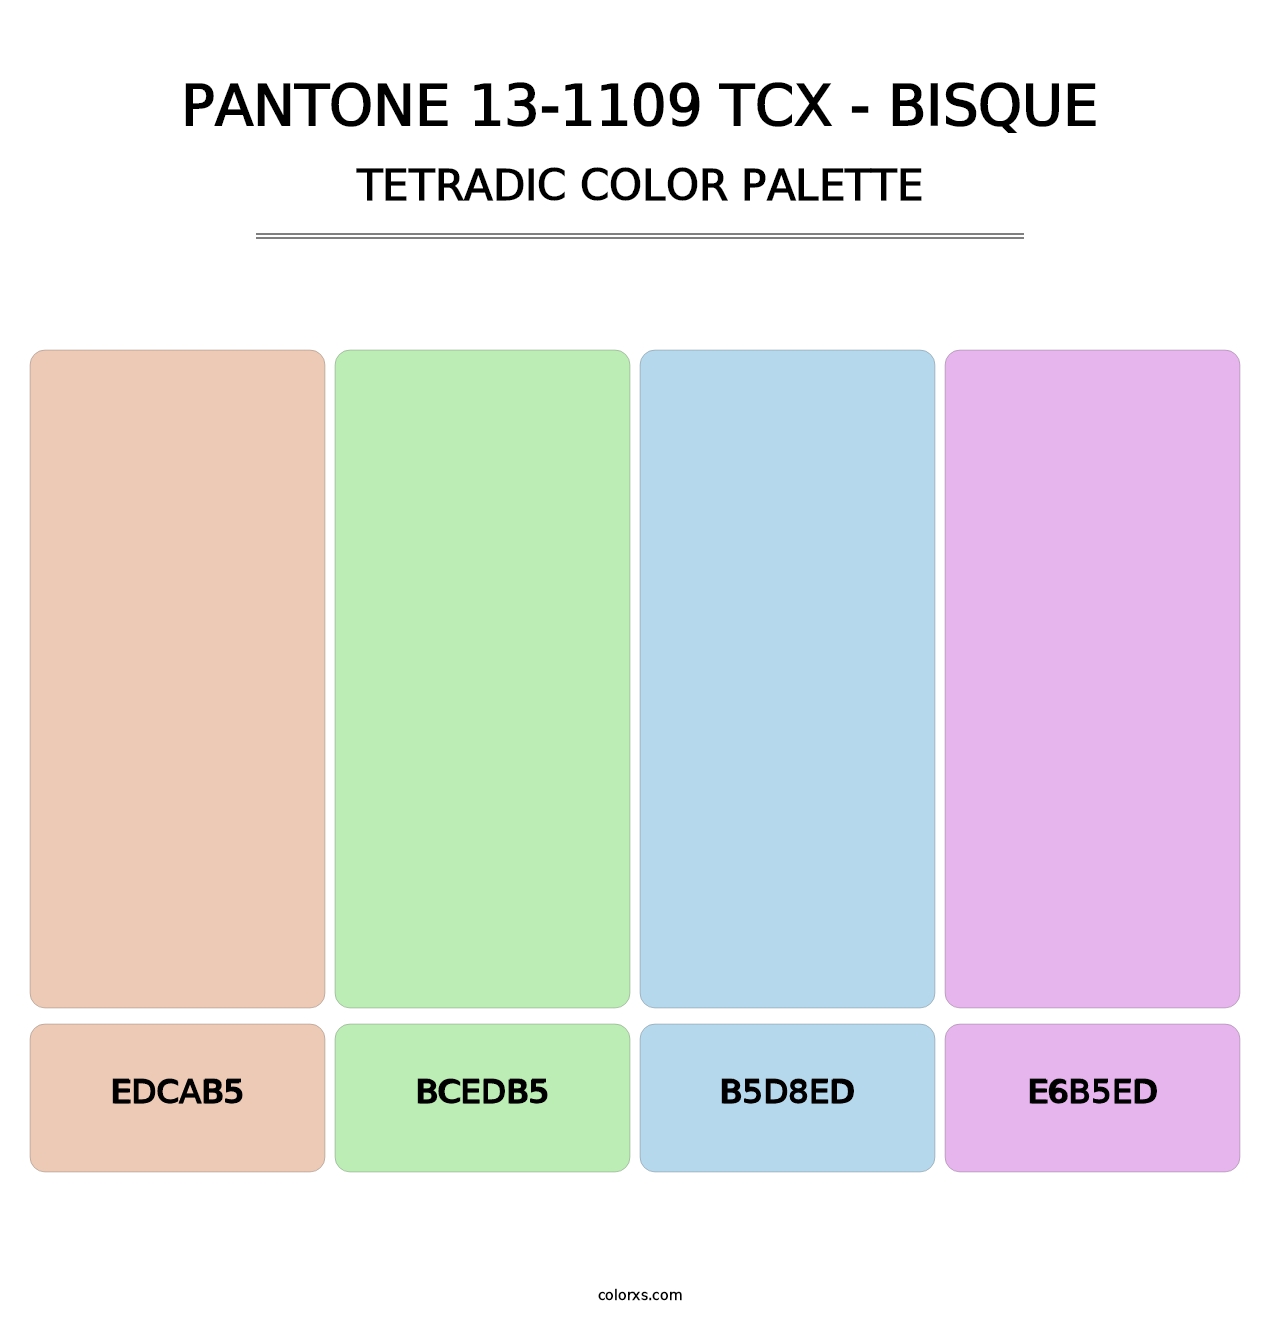 PANTONE 13-1109 TCX - Bisque - Tetradic Color Palette